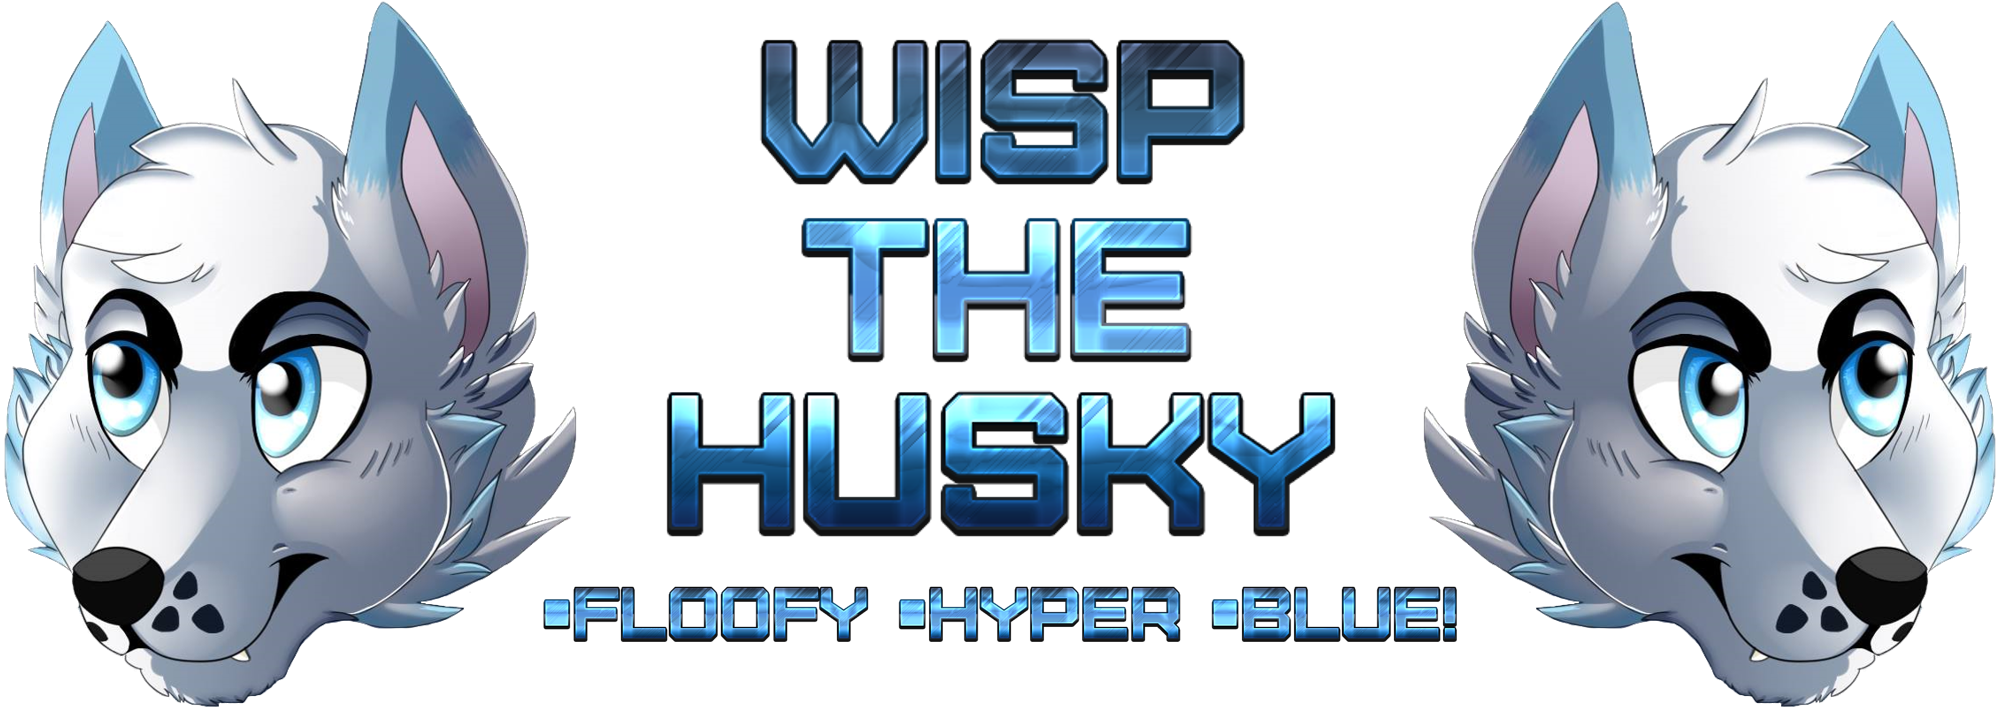 Wisp The Husky Logo ^.^